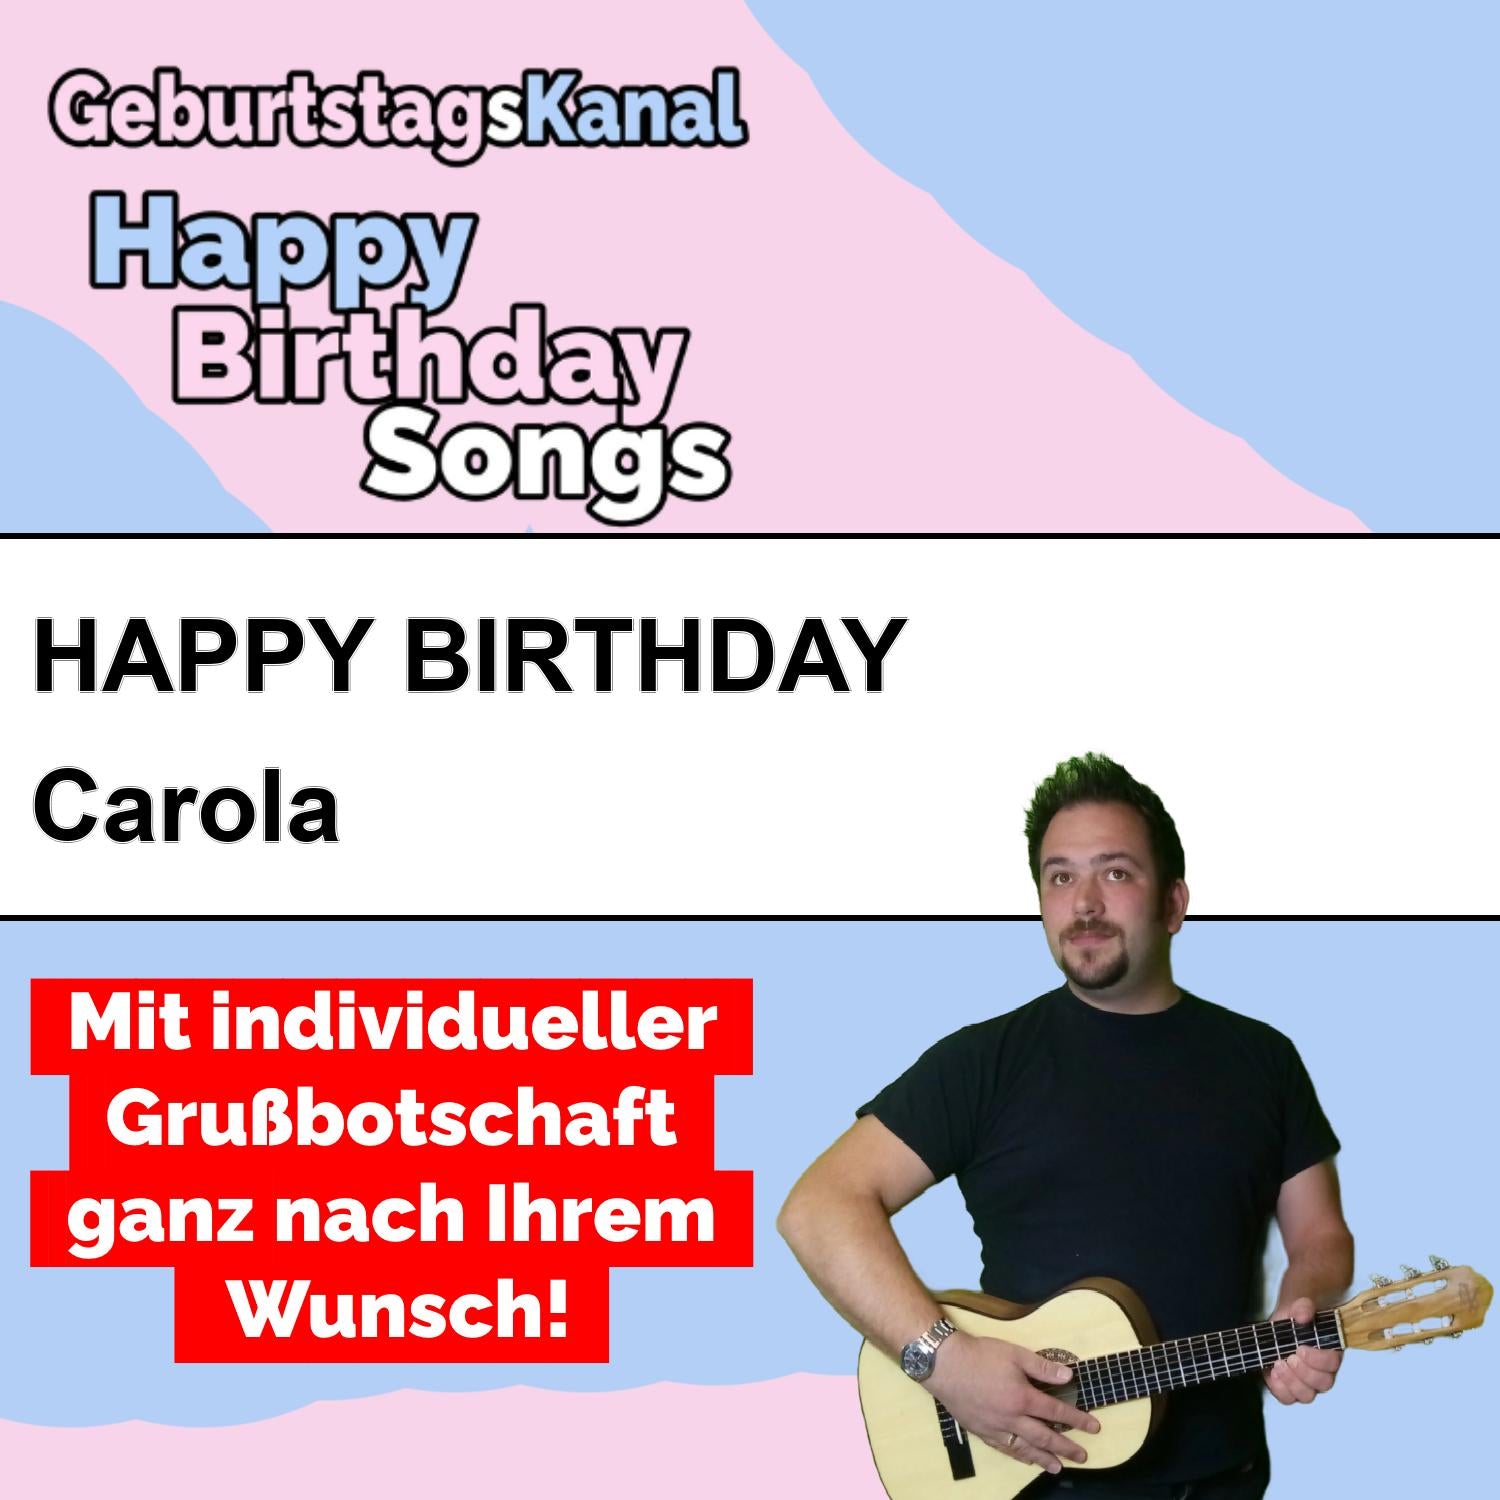 Produktbild Happy Birthday to you Carola mit Wunschgrußbotschaft